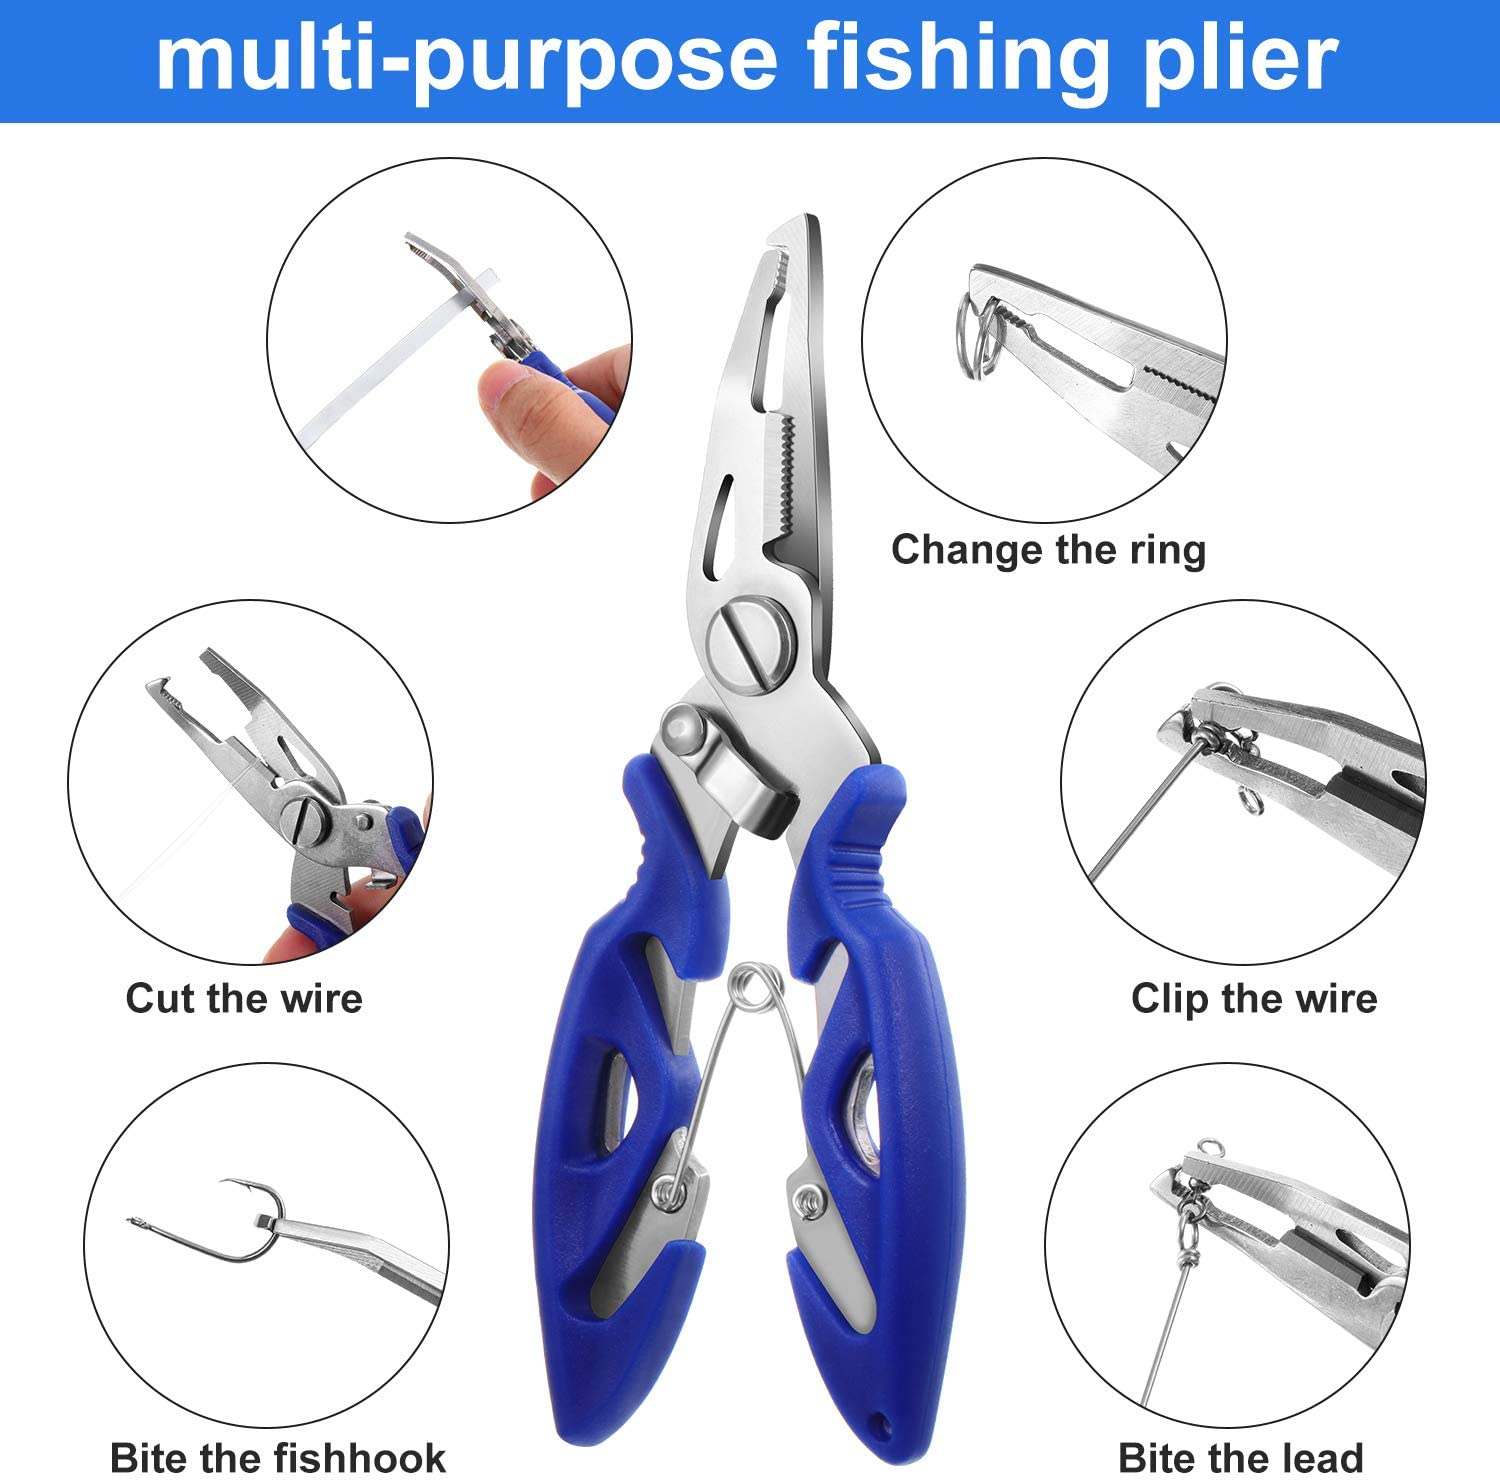 101PCS Fishing Lure Set Fishing Bait Set Including Spinners,VIB,Treble  Hooks,Single Hooks,Swivels